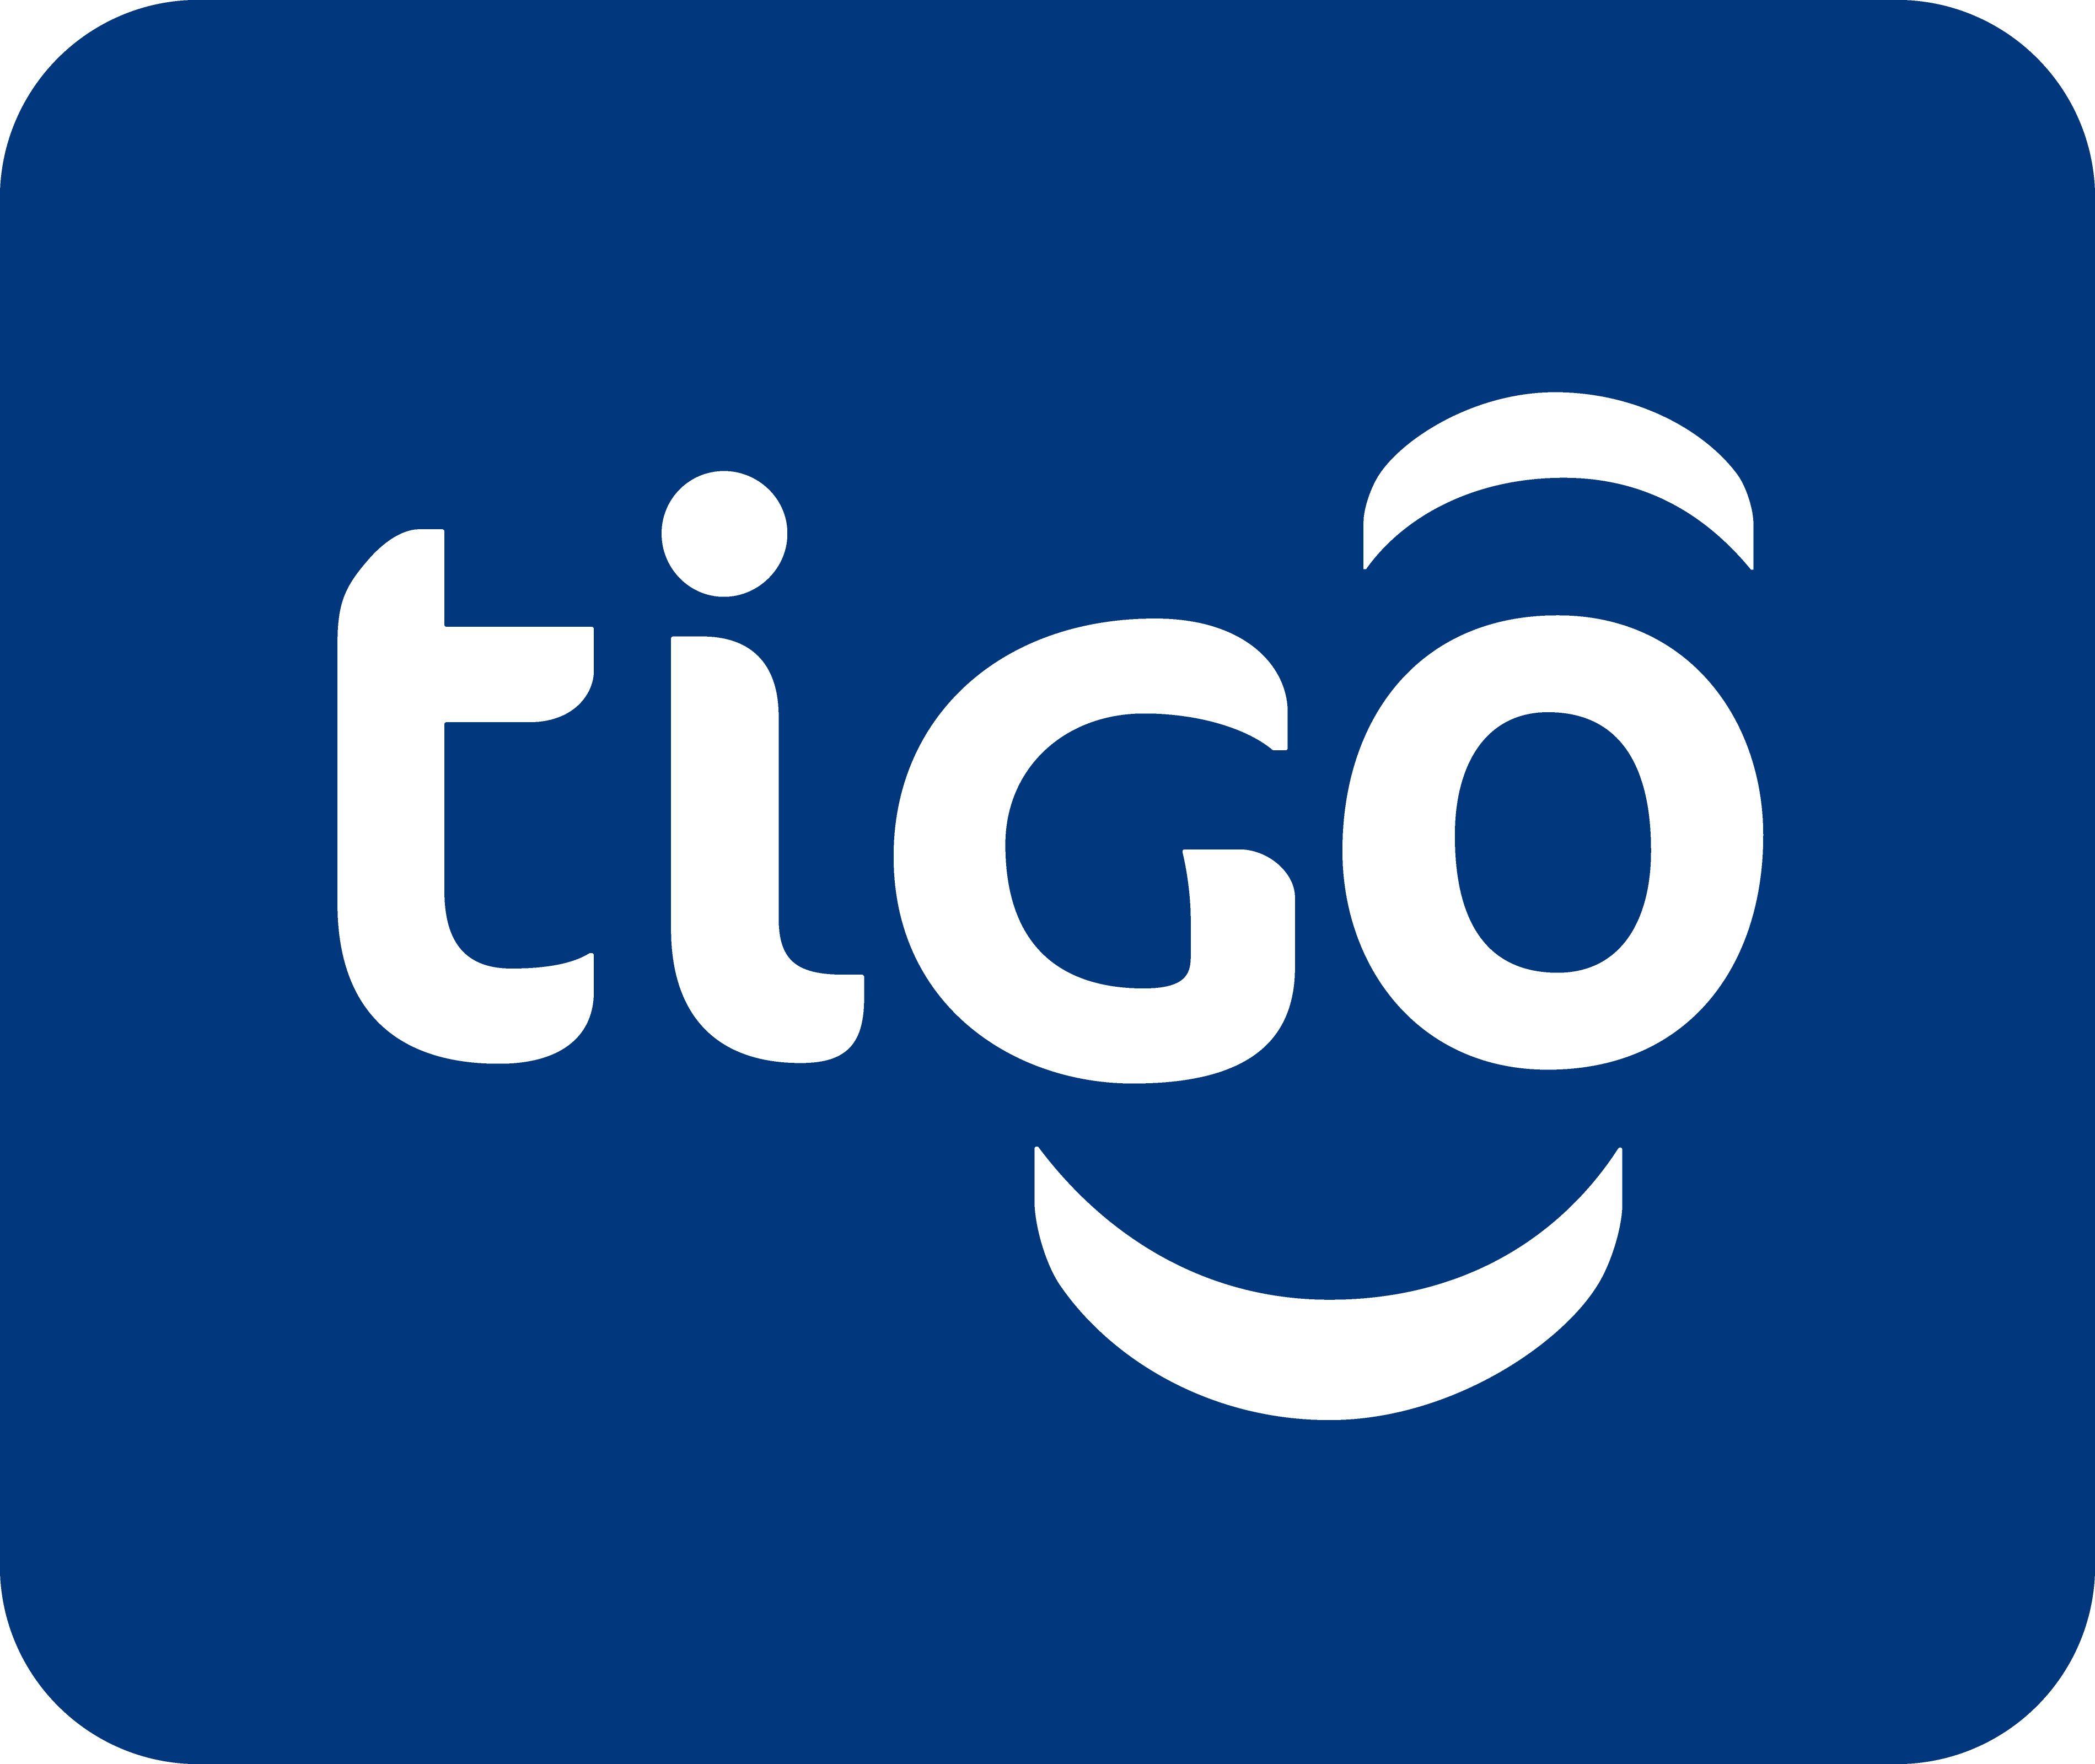 micuenta.tigo.com.co